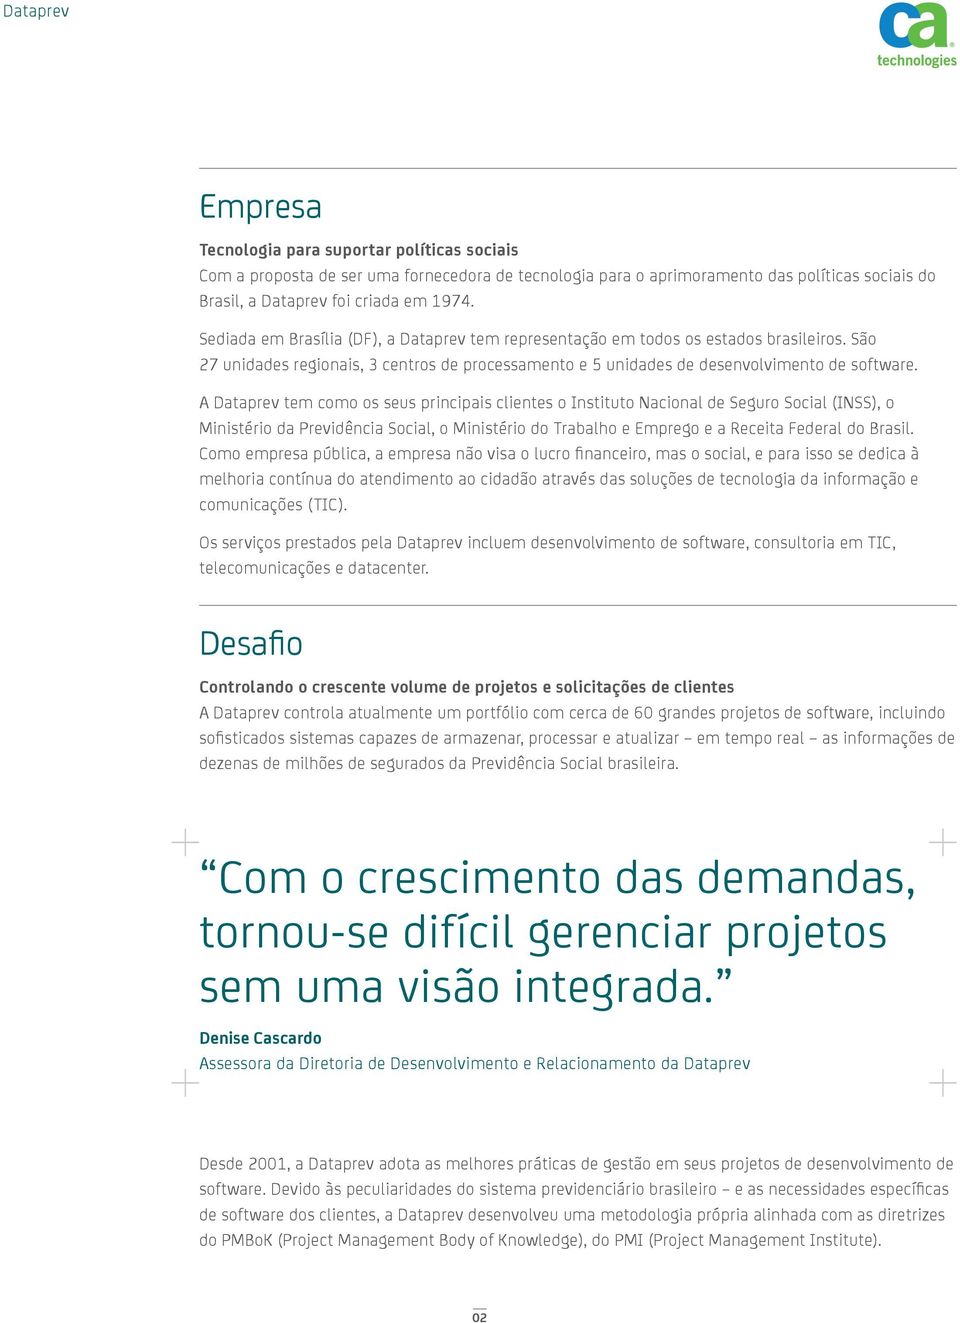 A Dataprev tem como os seus principais clientes o Instituto Nacional de Seguro Social (INSS), o Ministério da Previdência Social, o Ministério do Trabalho e Emprego e a Receita Federal do Brasil.